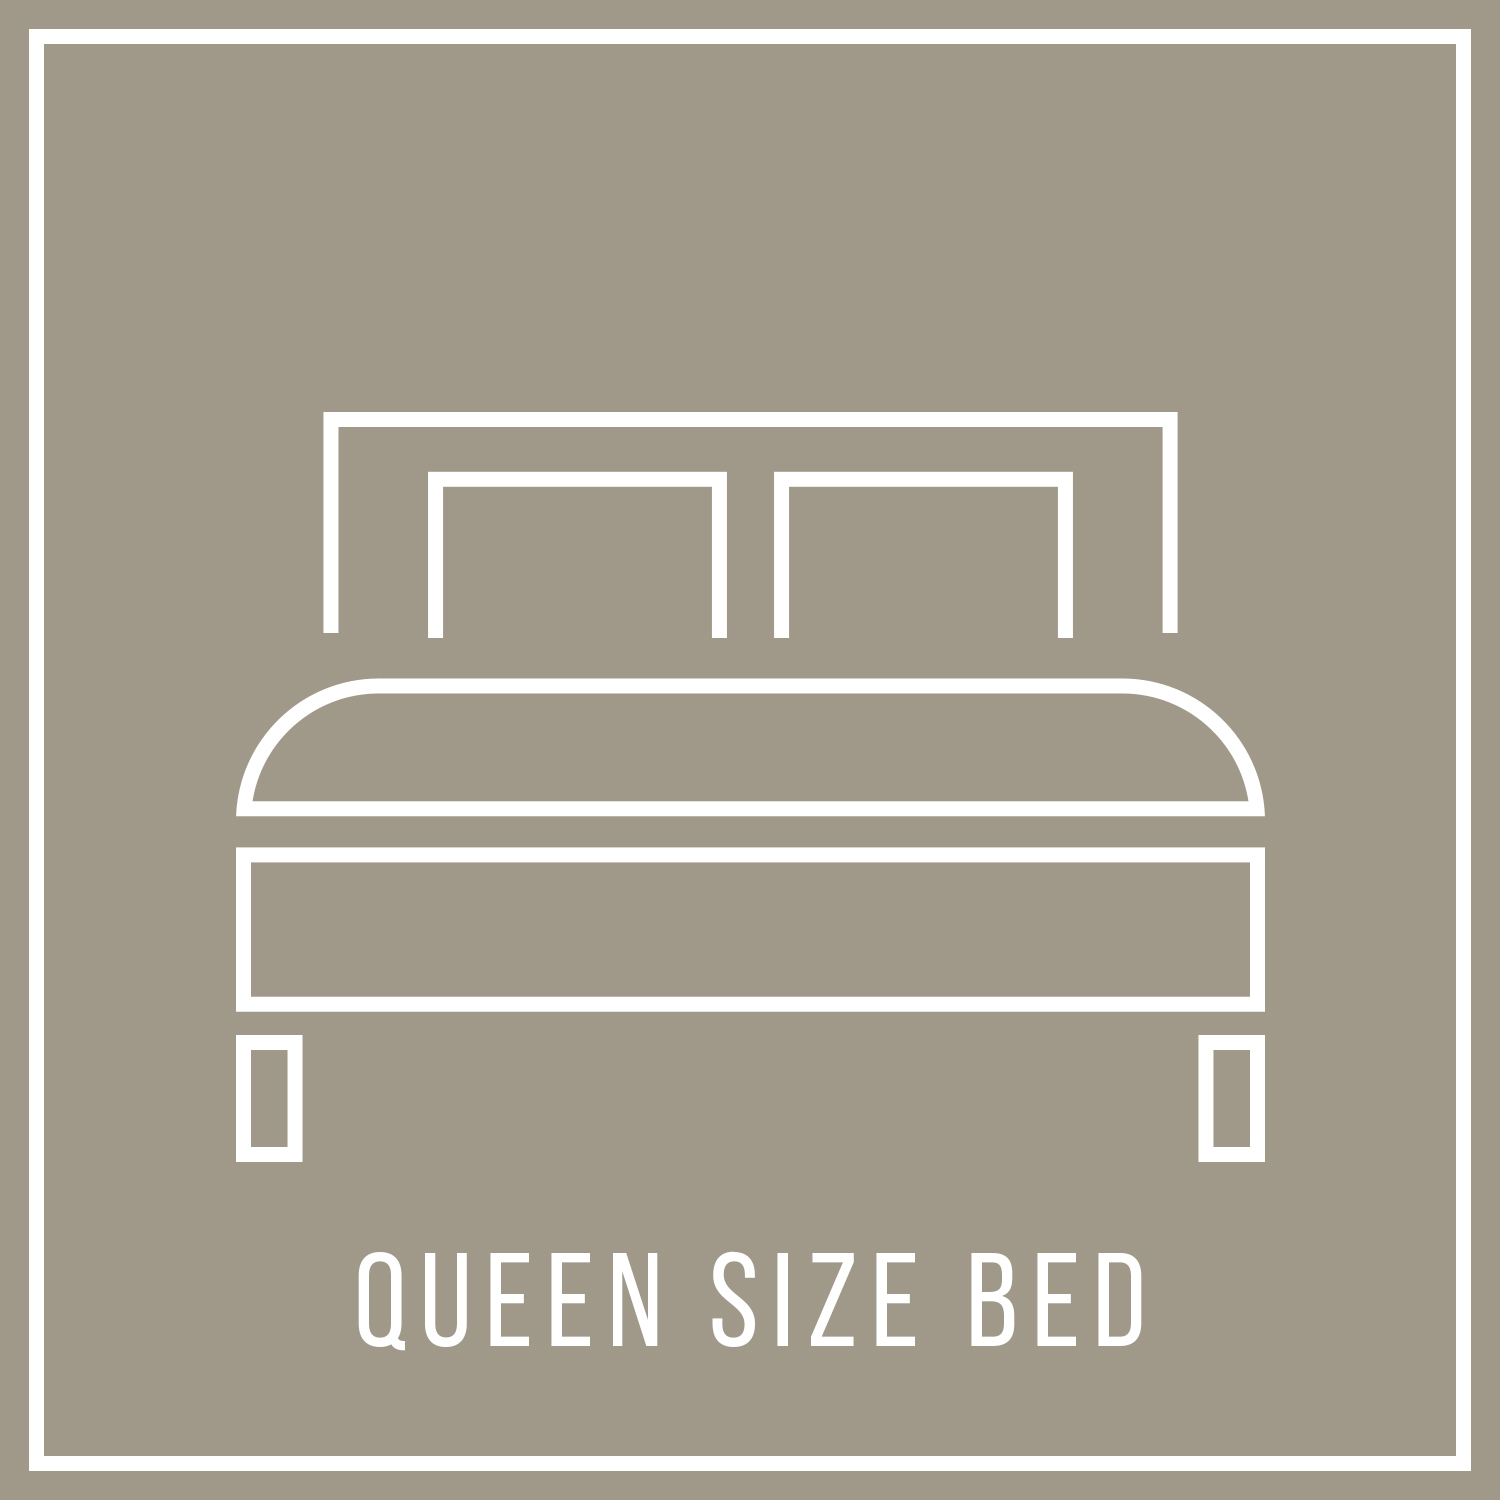 aya-kapadokya-room-features-vault-suite-square-queen-size-bed